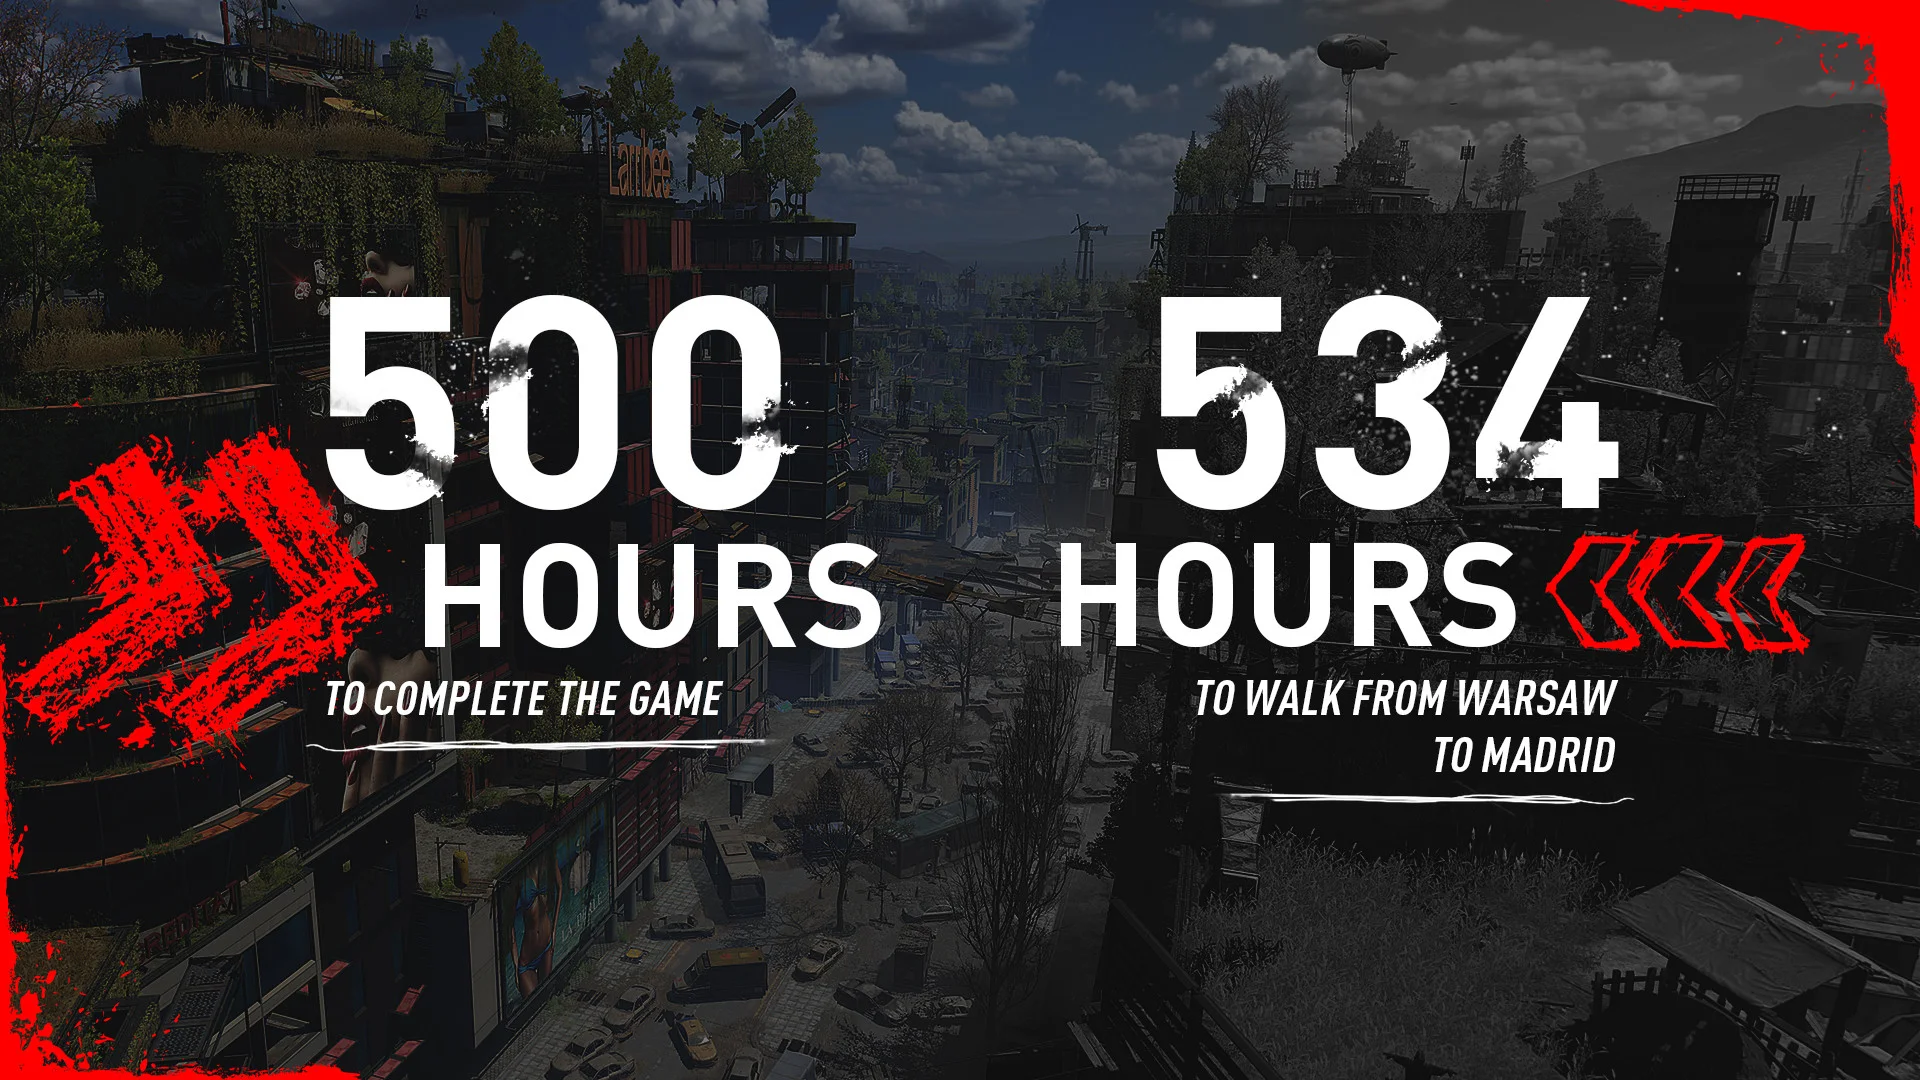 Полное прохождение Dying Light 2 займёт более 500 часов - фото 1